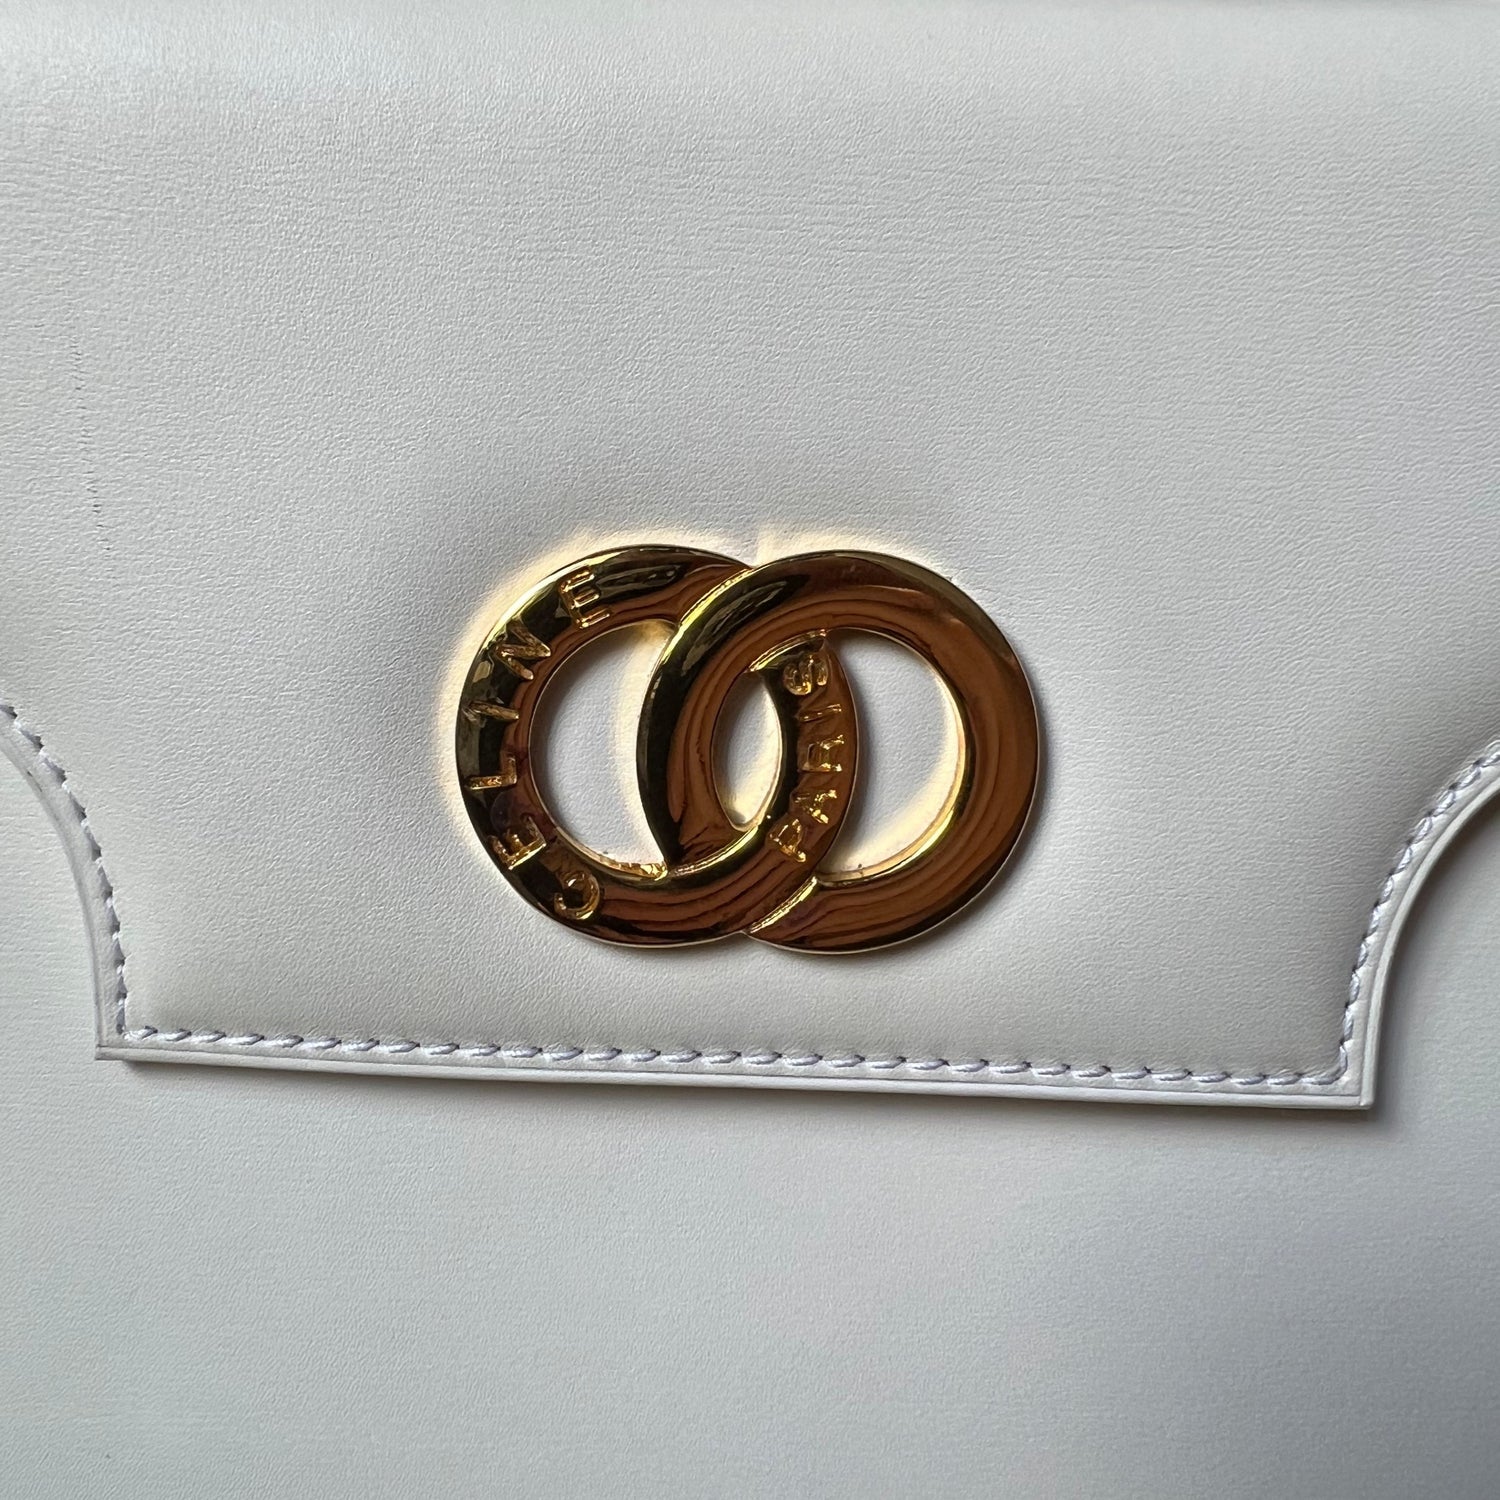 Celine Vintage Kelly style handbag